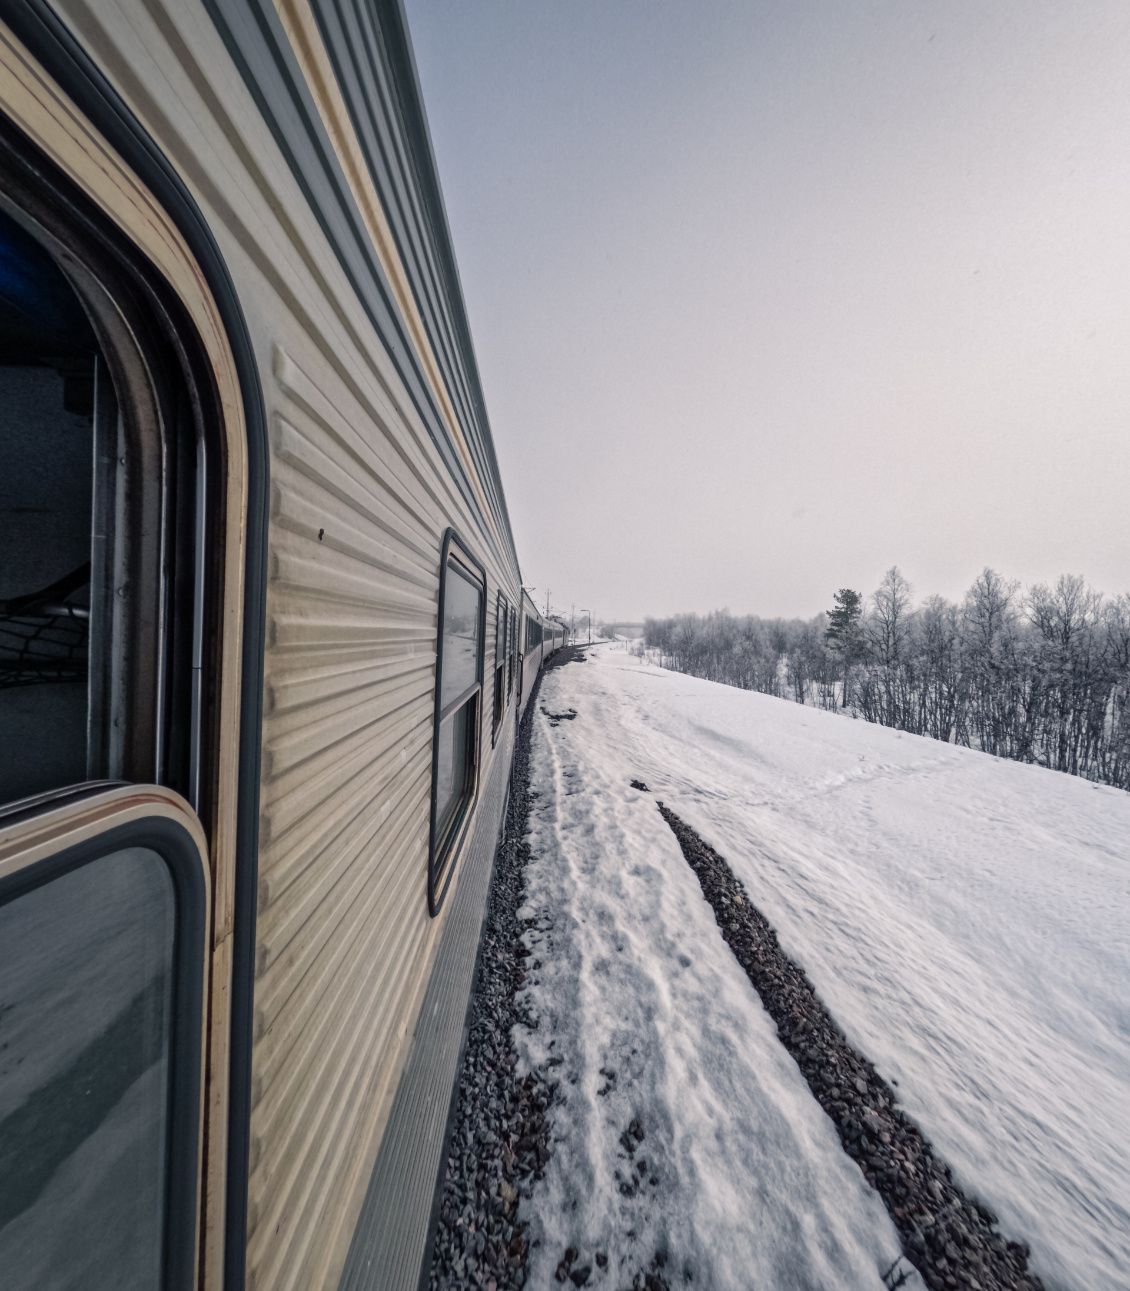 Le Pôle Express. Comme dans un film, au petit matin, nous passons la tête par les fenêtres du train et respirons l’air du Grand Nord.
Photo : Jules Buthion